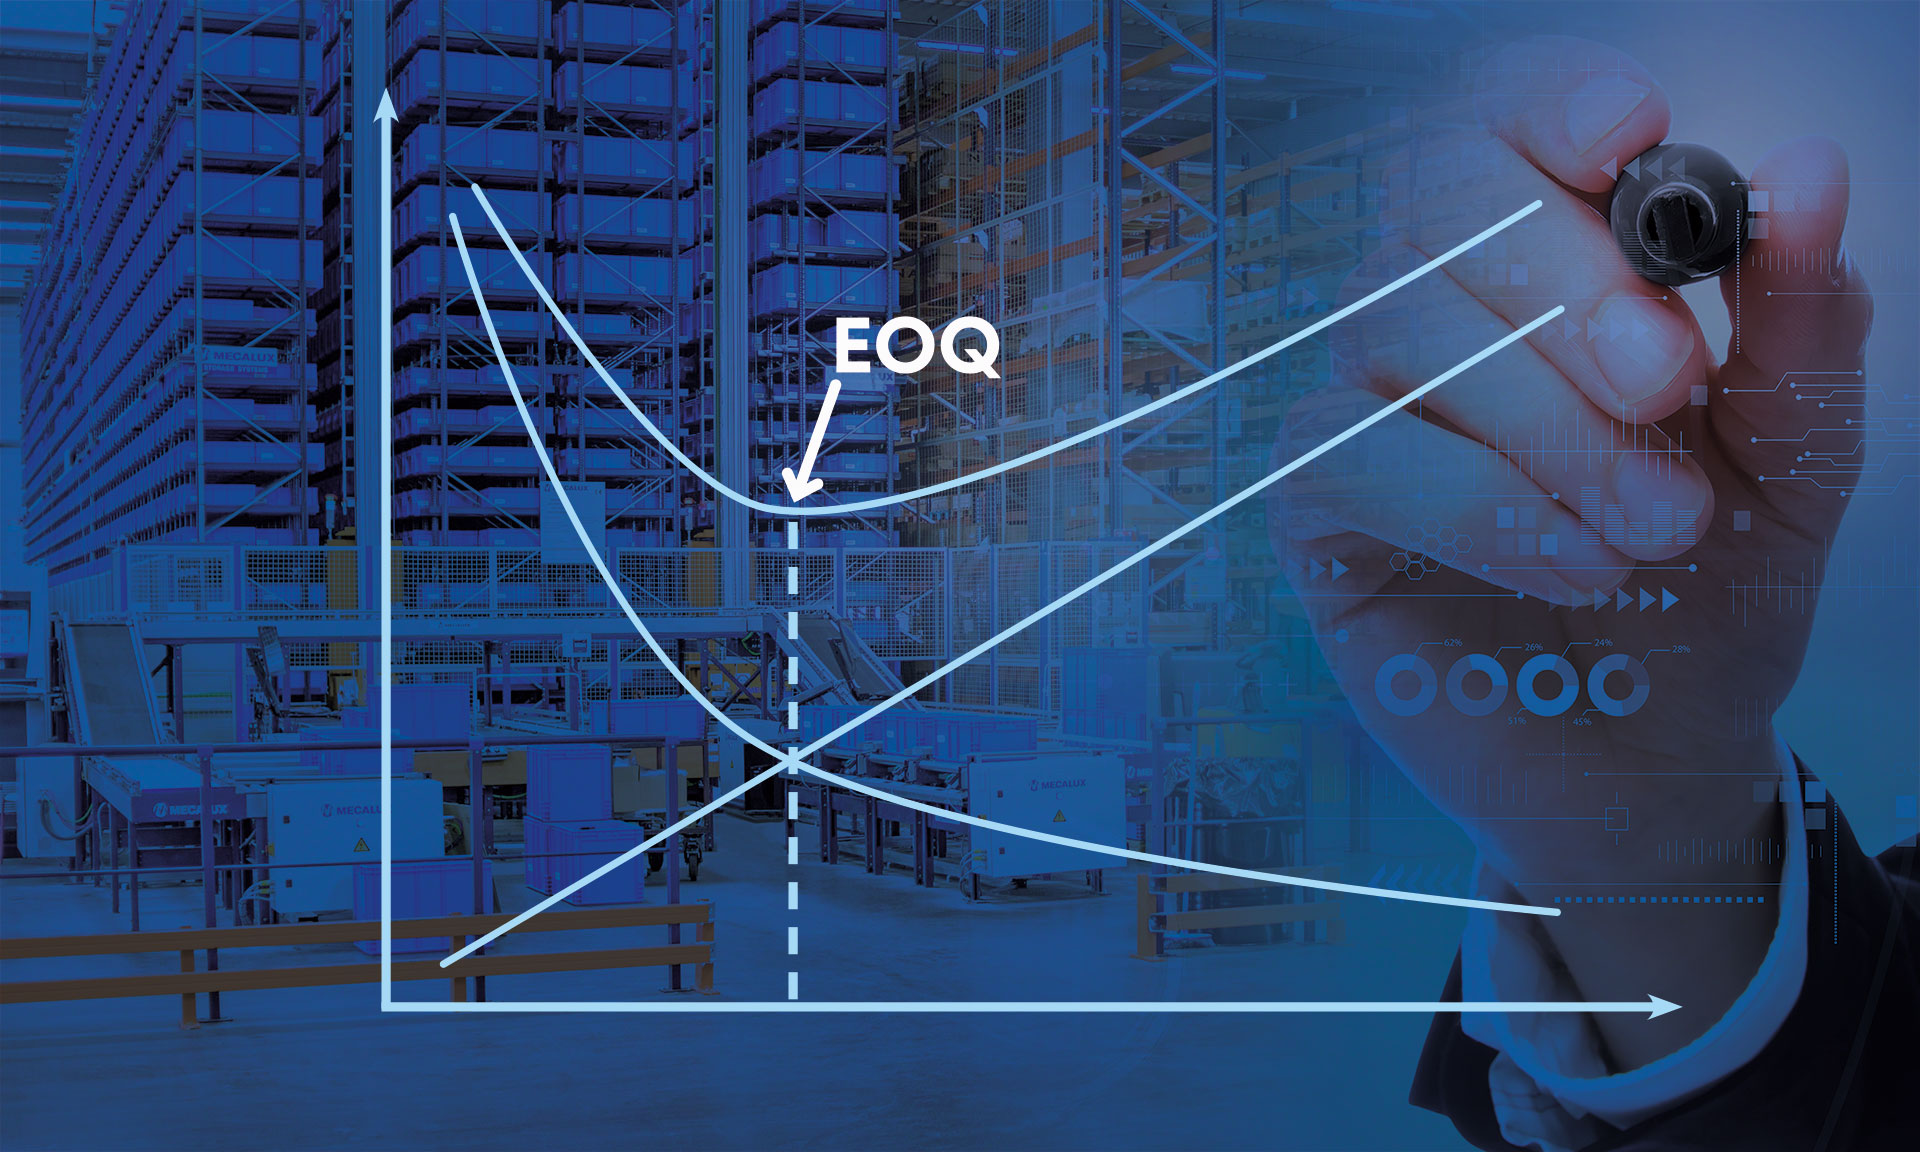 La EOQ (Economic Order Quantity) determina la cantidad óptima de productos a pedir en una compra para minimizar los costos